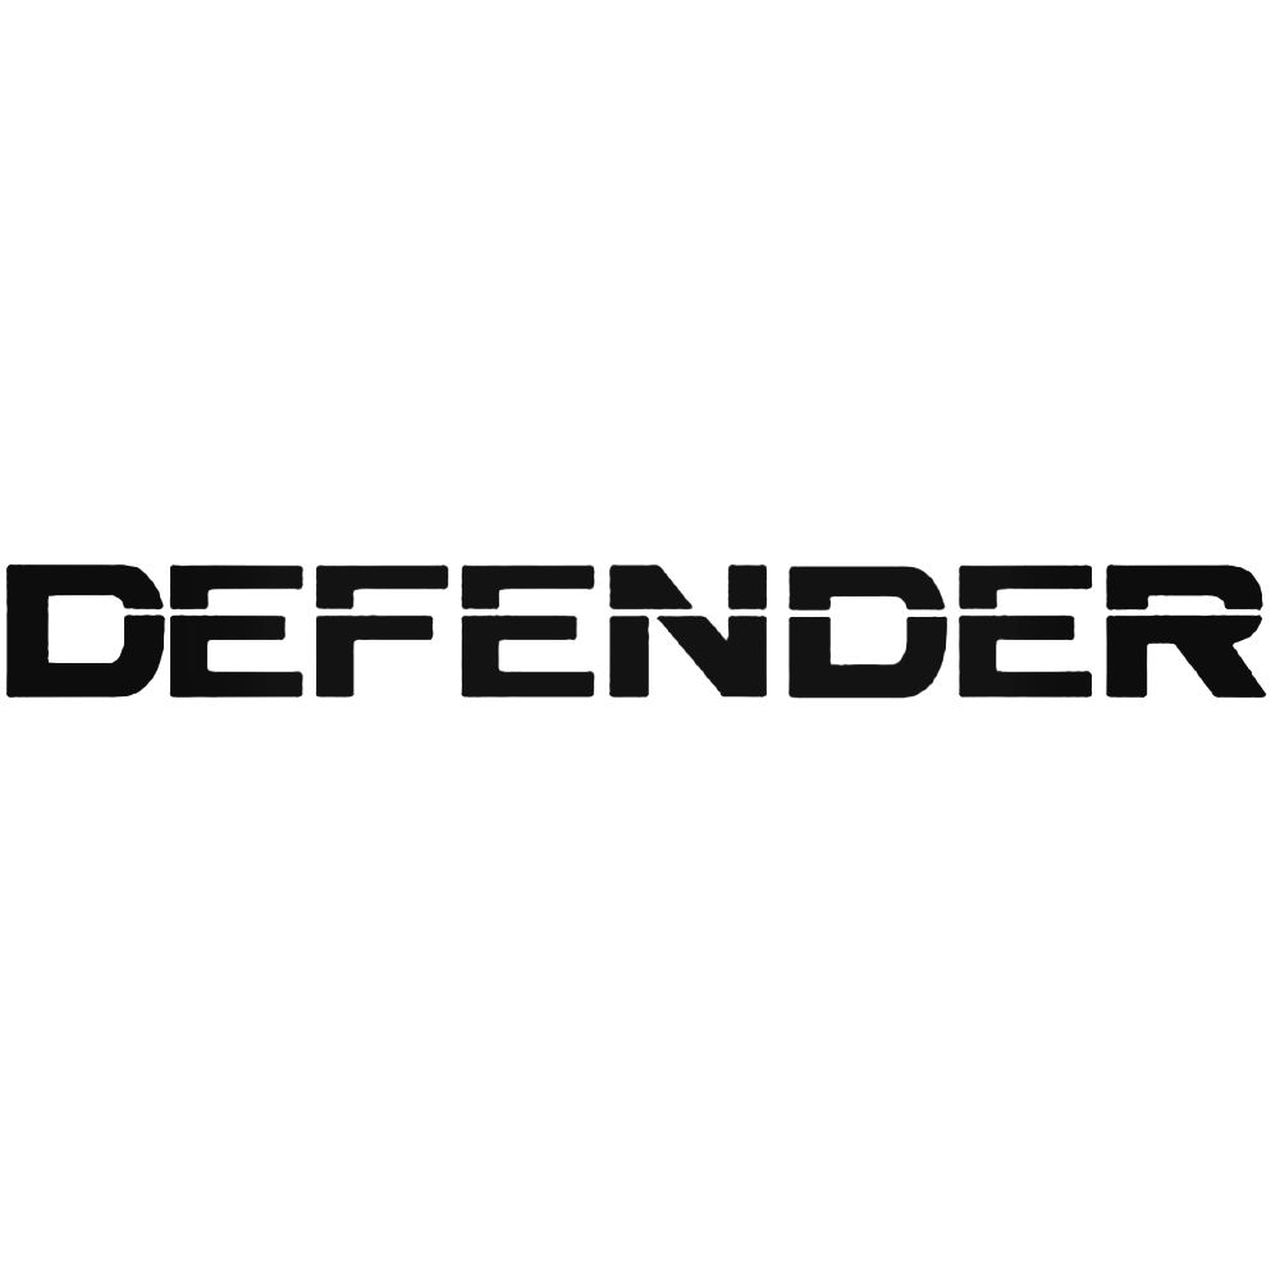 Defender Logo - Defender Decal Sticker